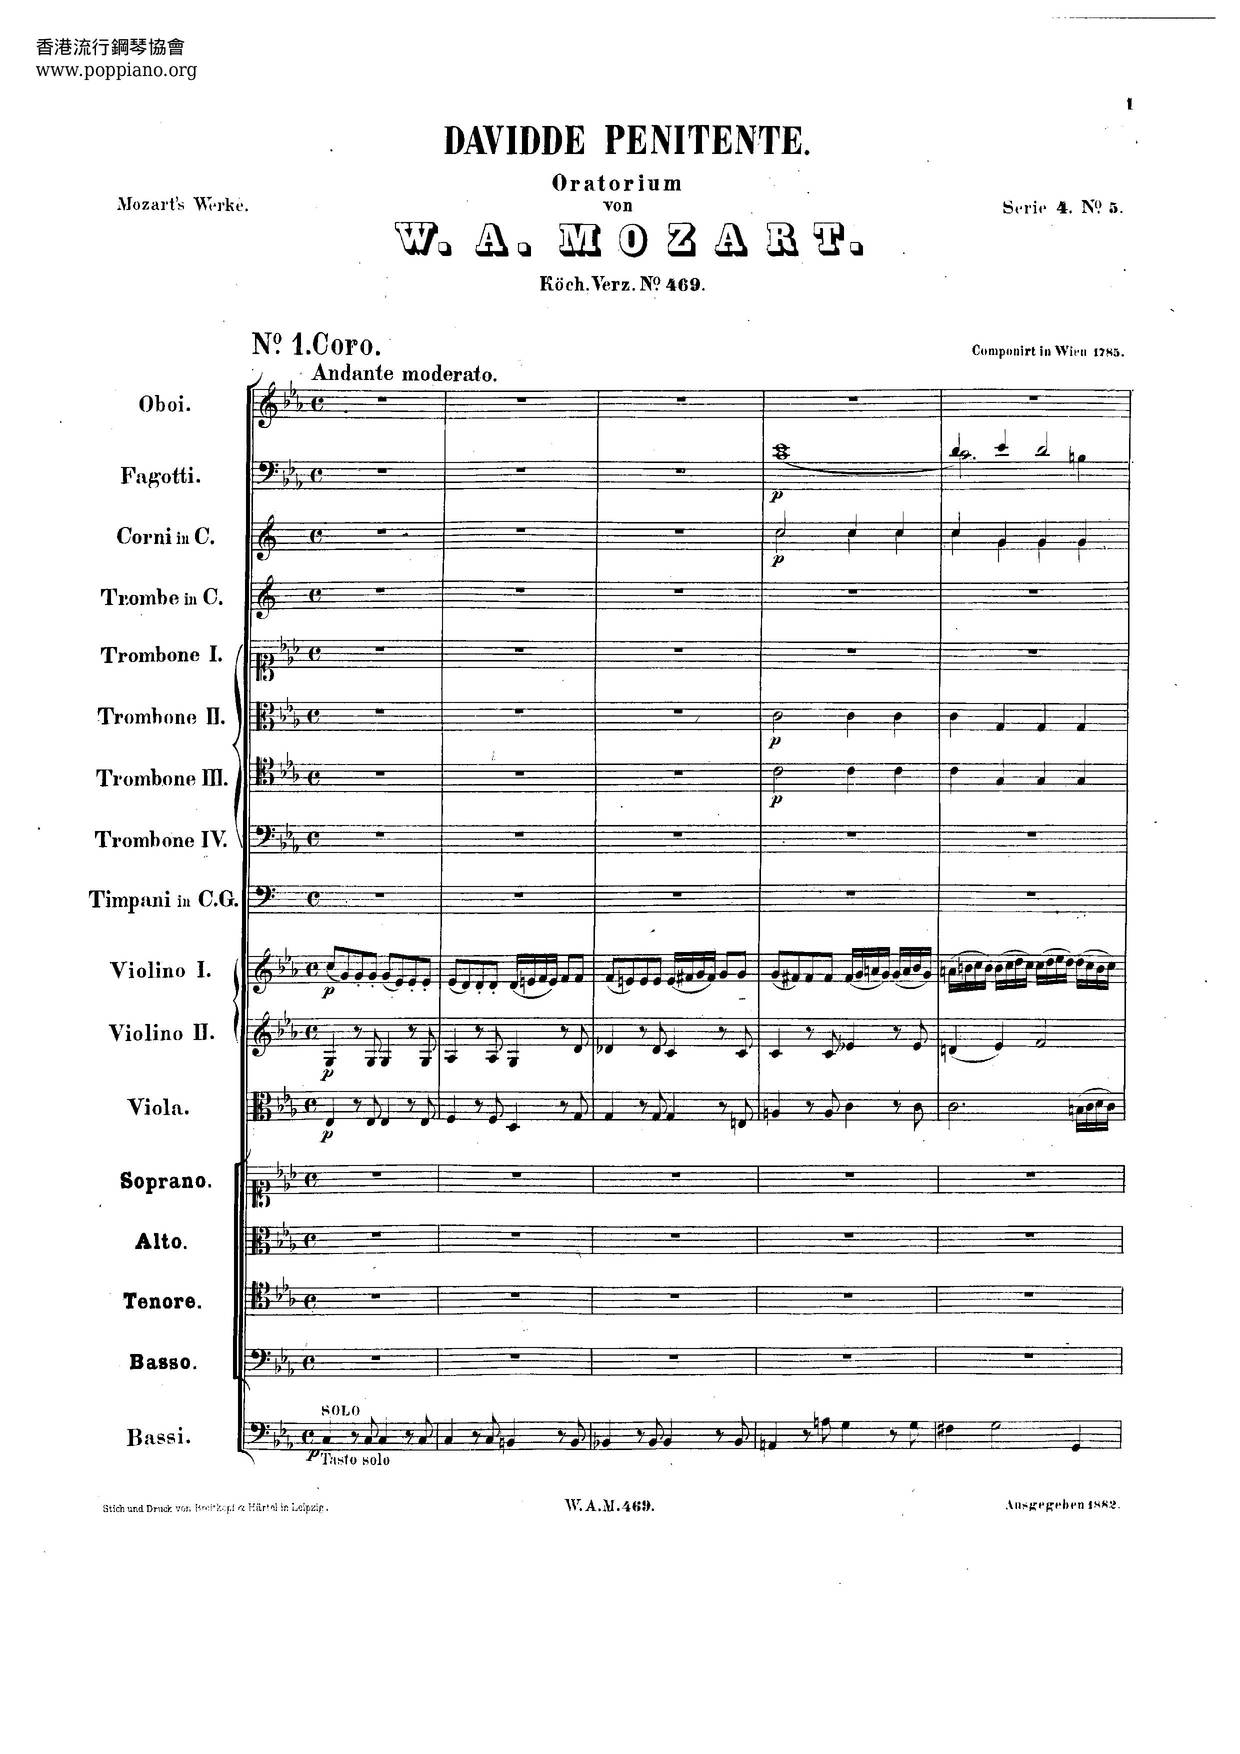 Davidde Penitente, K. 469 Score